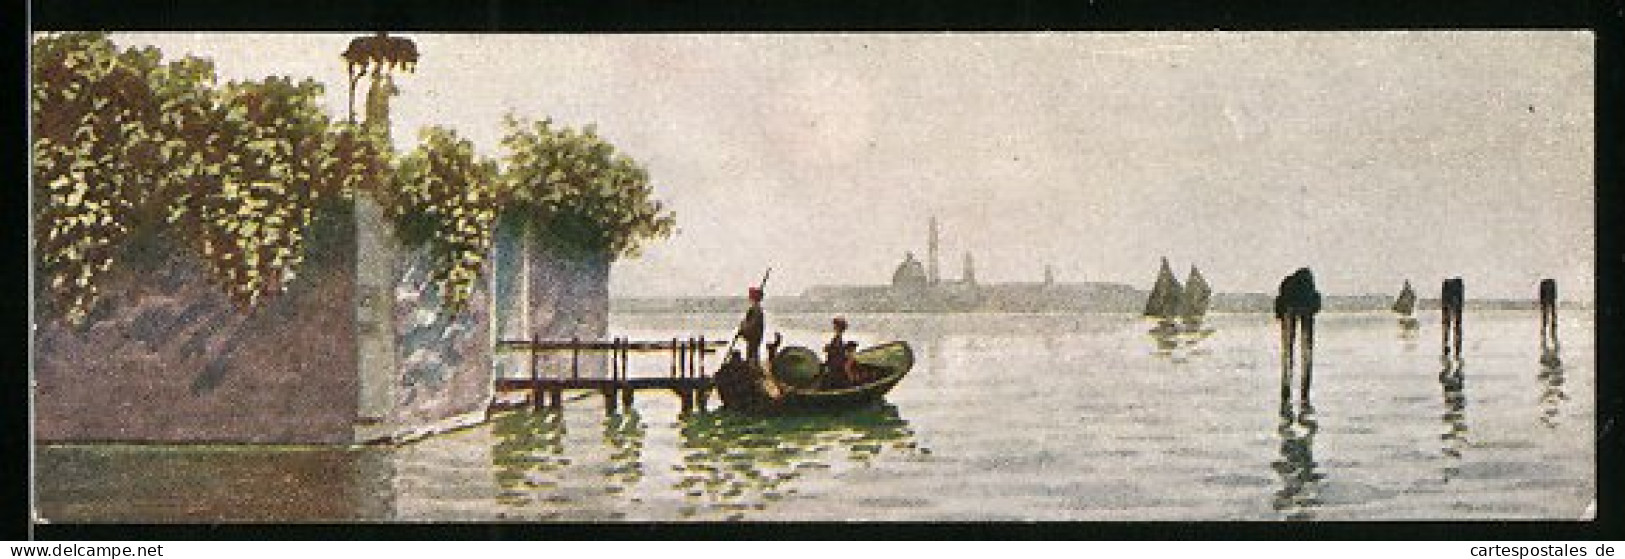 Mini-Cartolina Venezia, Laguna  - Venezia (Venice)